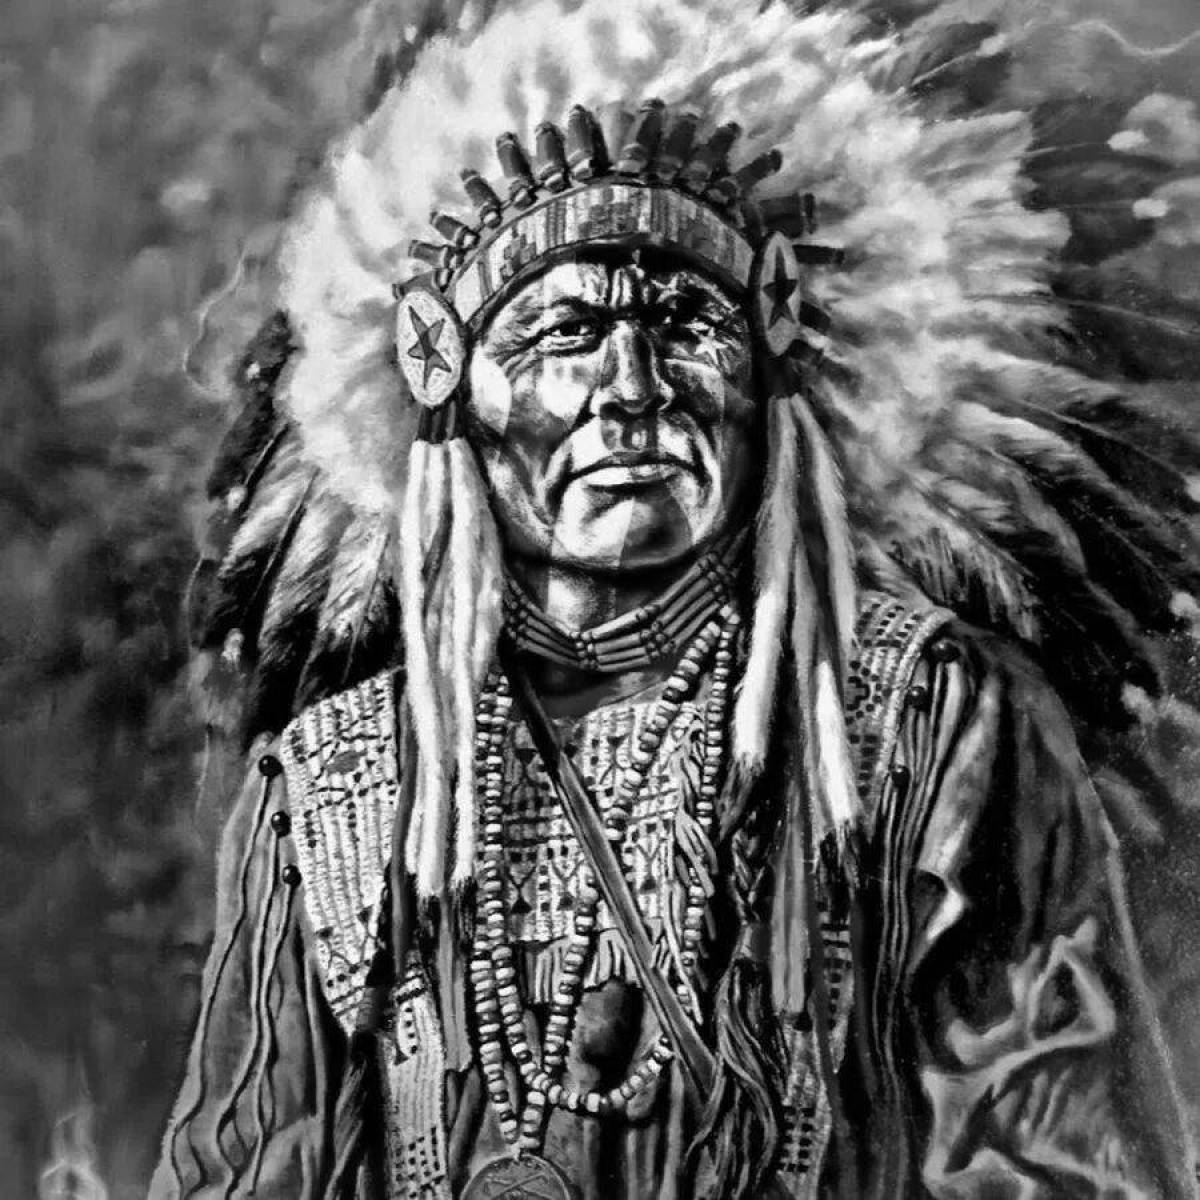 Вождь племени кукарача. Апачи индейцы. Индейцы Северной Америки Сиу. Индейцы вакаши. Индейцы шаманы Апачи.